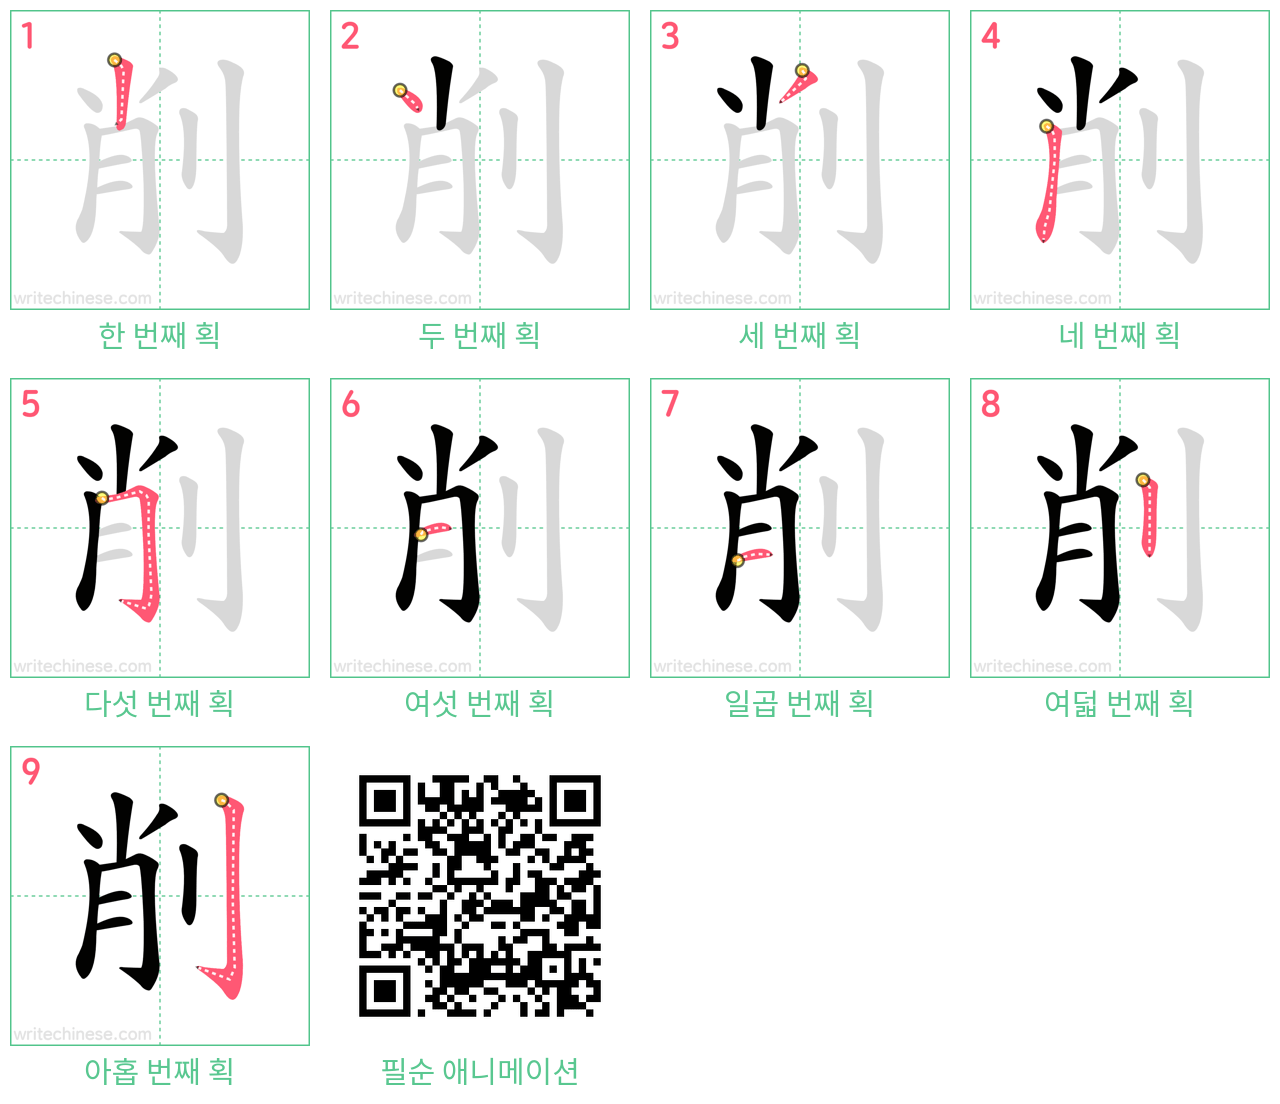 削 step-by-step stroke order diagrams